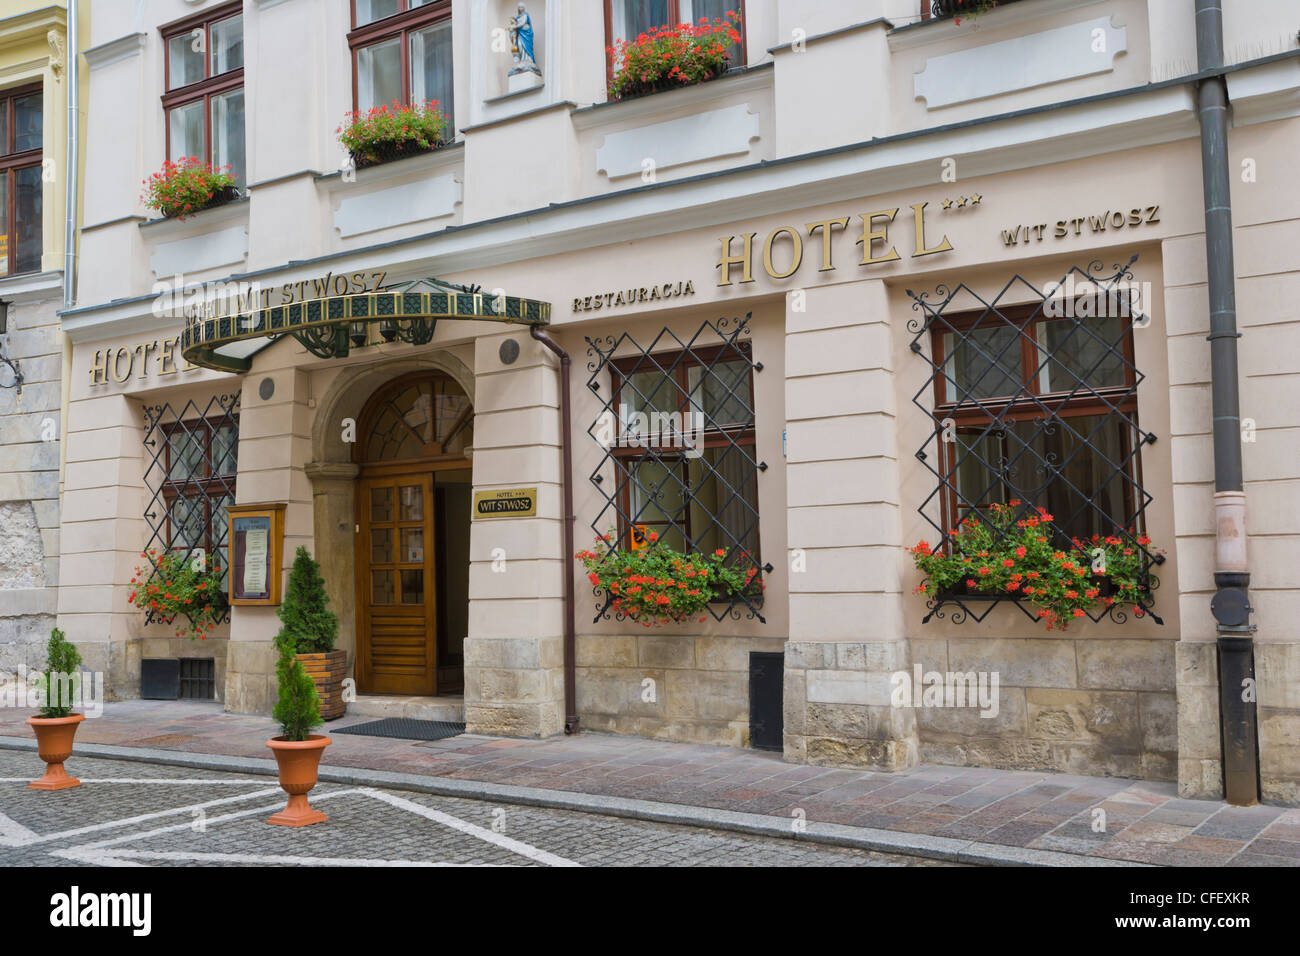 Wit Stwosz Hotel, ulica Mikolajska, Mikolajska Street,Old Cracow, Krakow, Malopolska Province, Lesser Poland Voivodeship, Poland Stock Photo